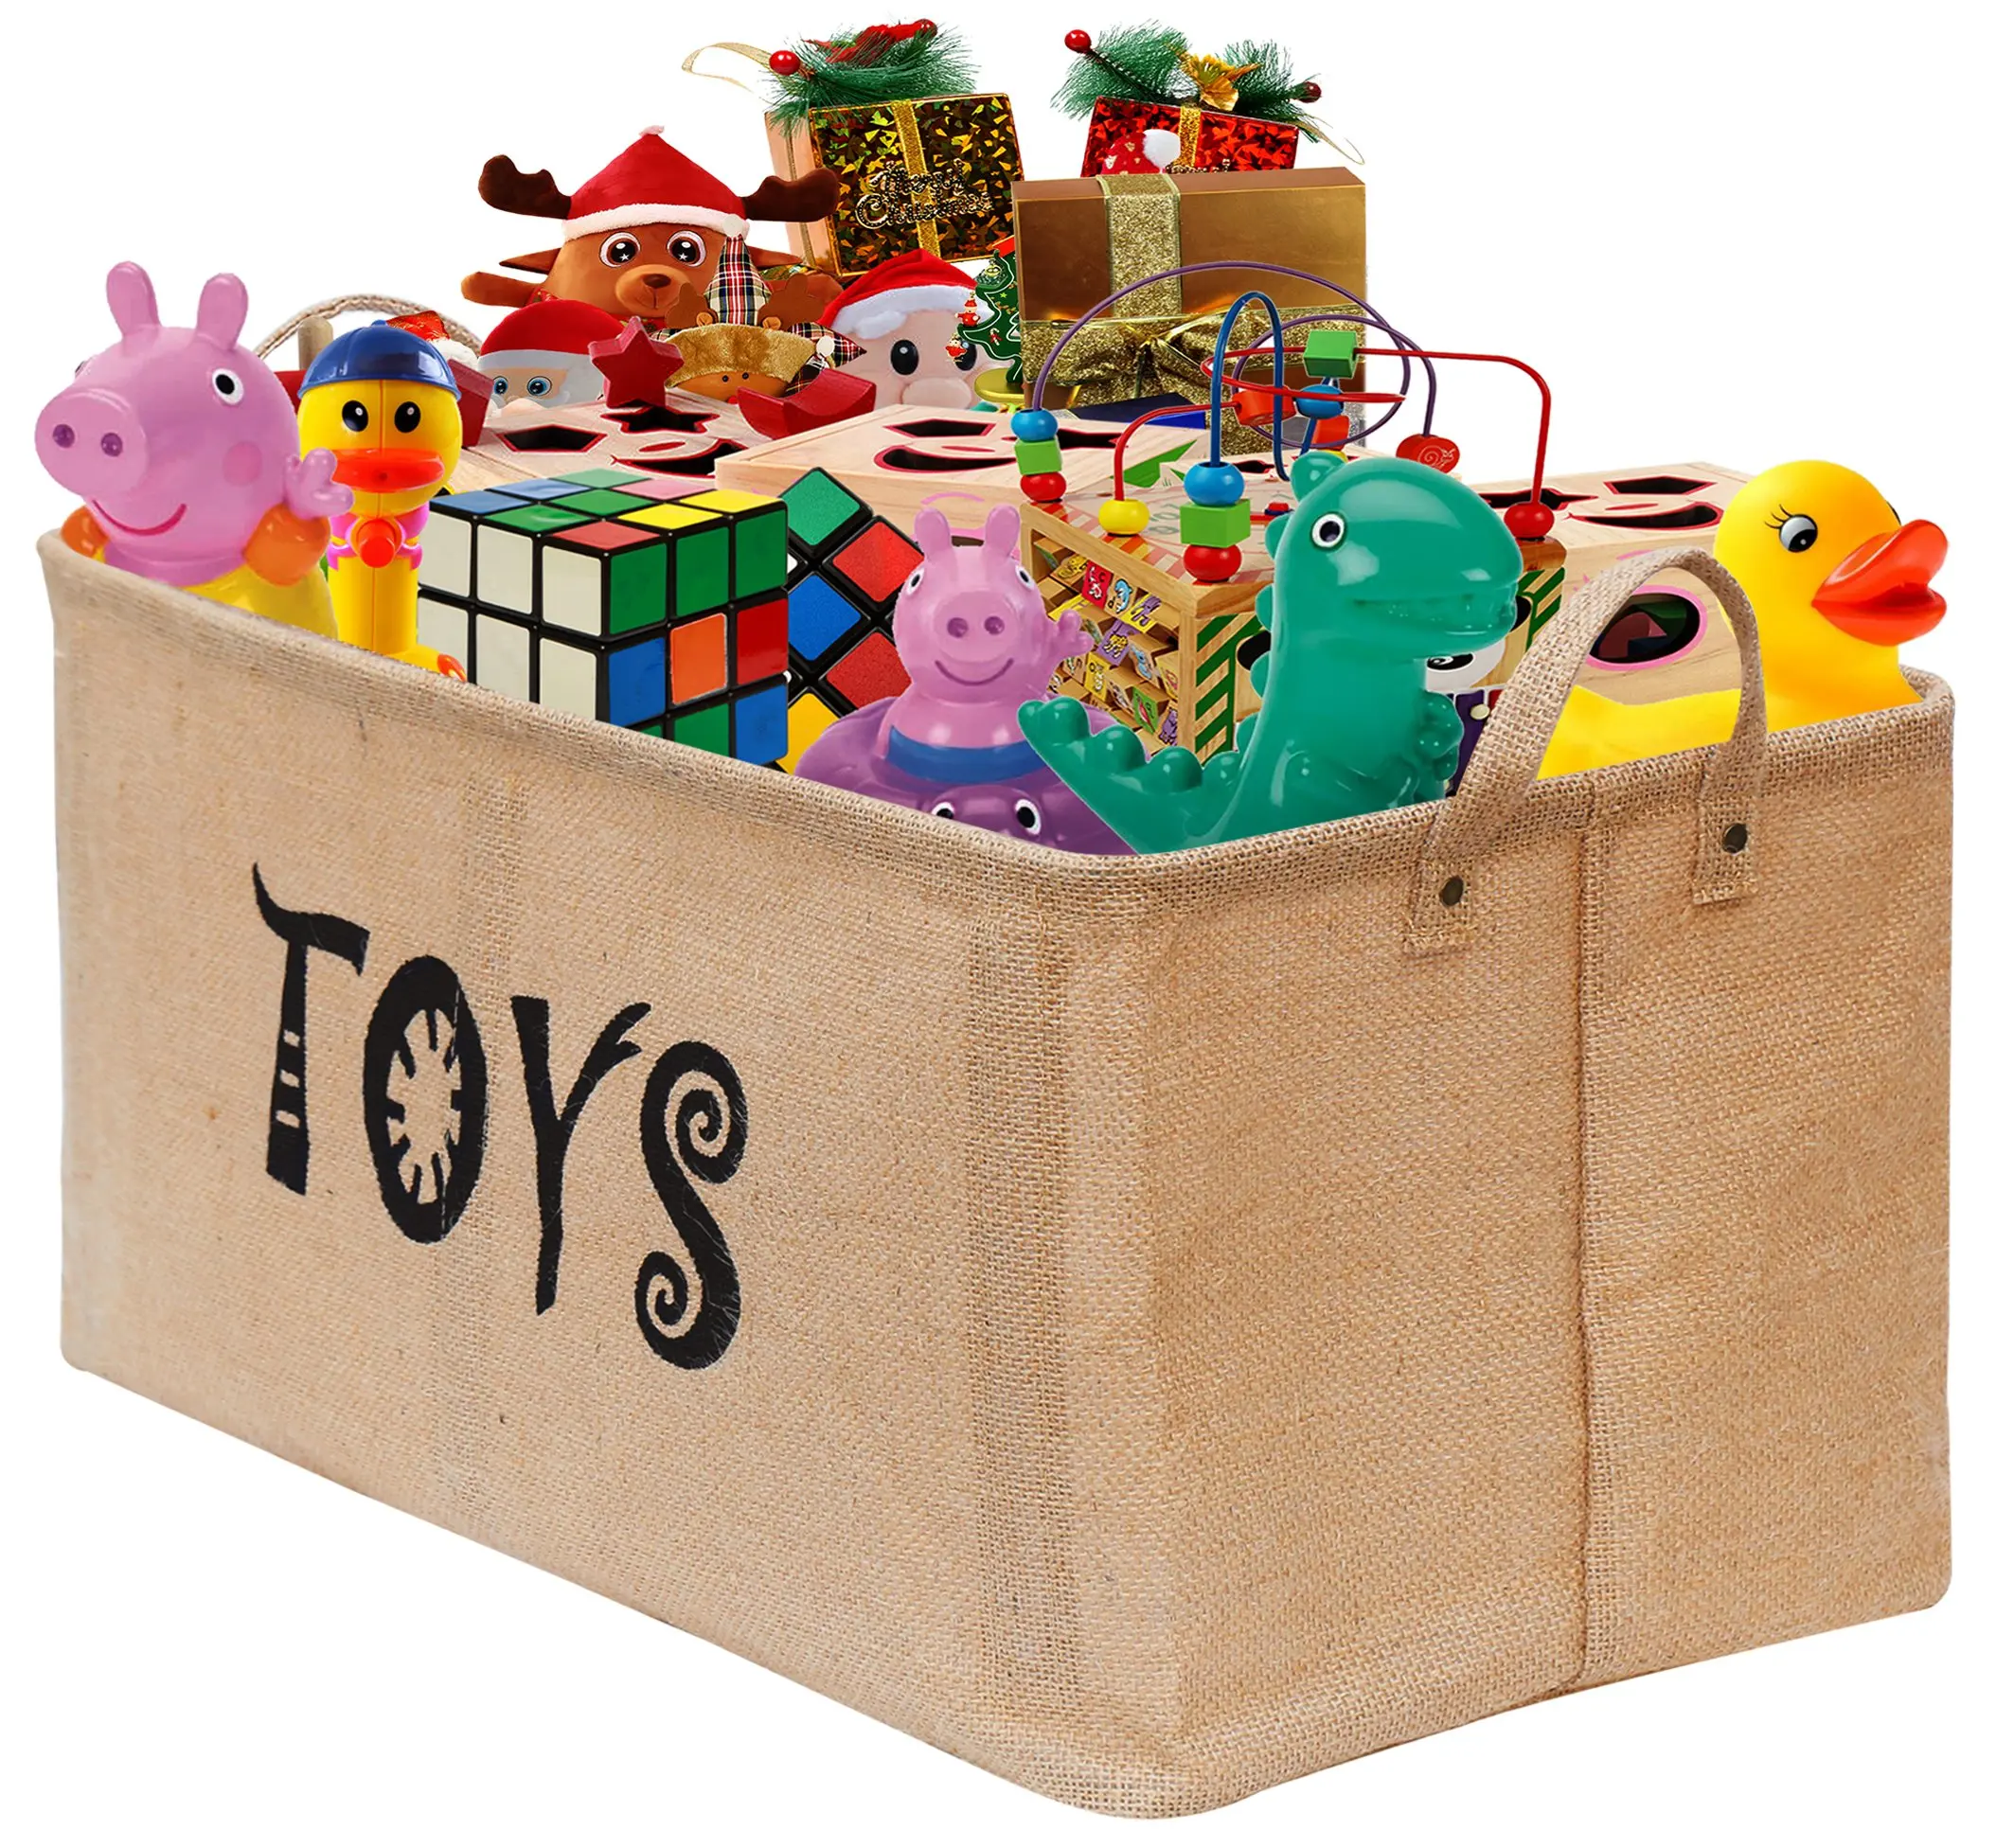 Бокс игрушками купить. Коробки для игрушек. Коробка с игрушками. Большая коробка для игрушек. Toy Box (игрушки).